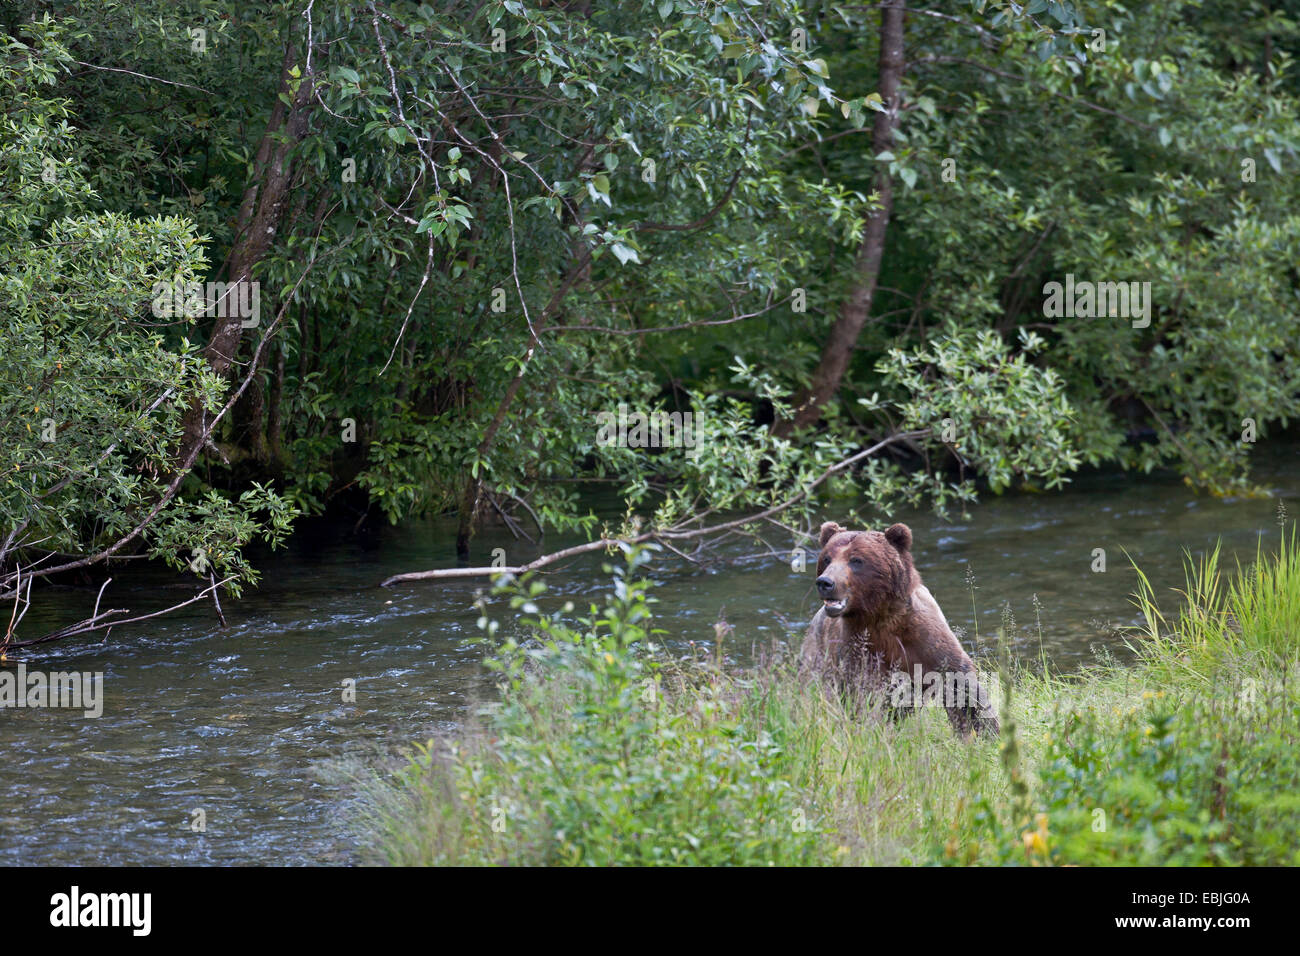 Brauner Bär, grizzly Bär, grizzly (Ursus Arctos Horribilis), stehen am Ufer eines Flusses zwischen Wald und Wiese, USA, Alaska, Tongass National Forest, Fish Creek Wildlife Site Stockfoto